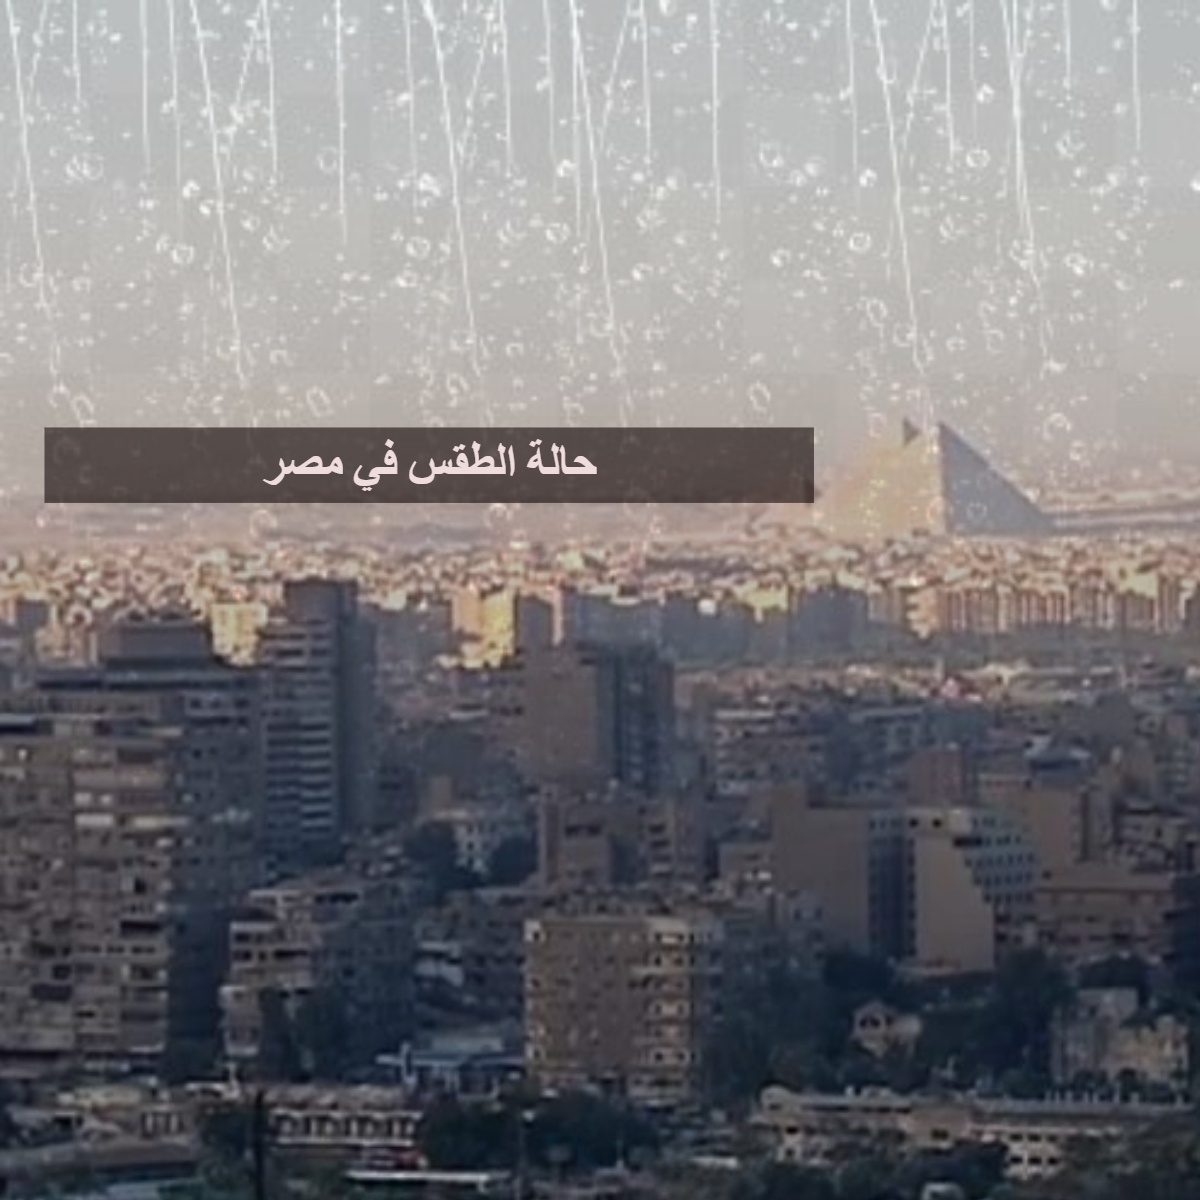 حالة الطقس في مصر غدًا الاثنين وتحذيرات من هيئة الأرصاد الجوية وأماكن سقوط  الأمطار 10-2-